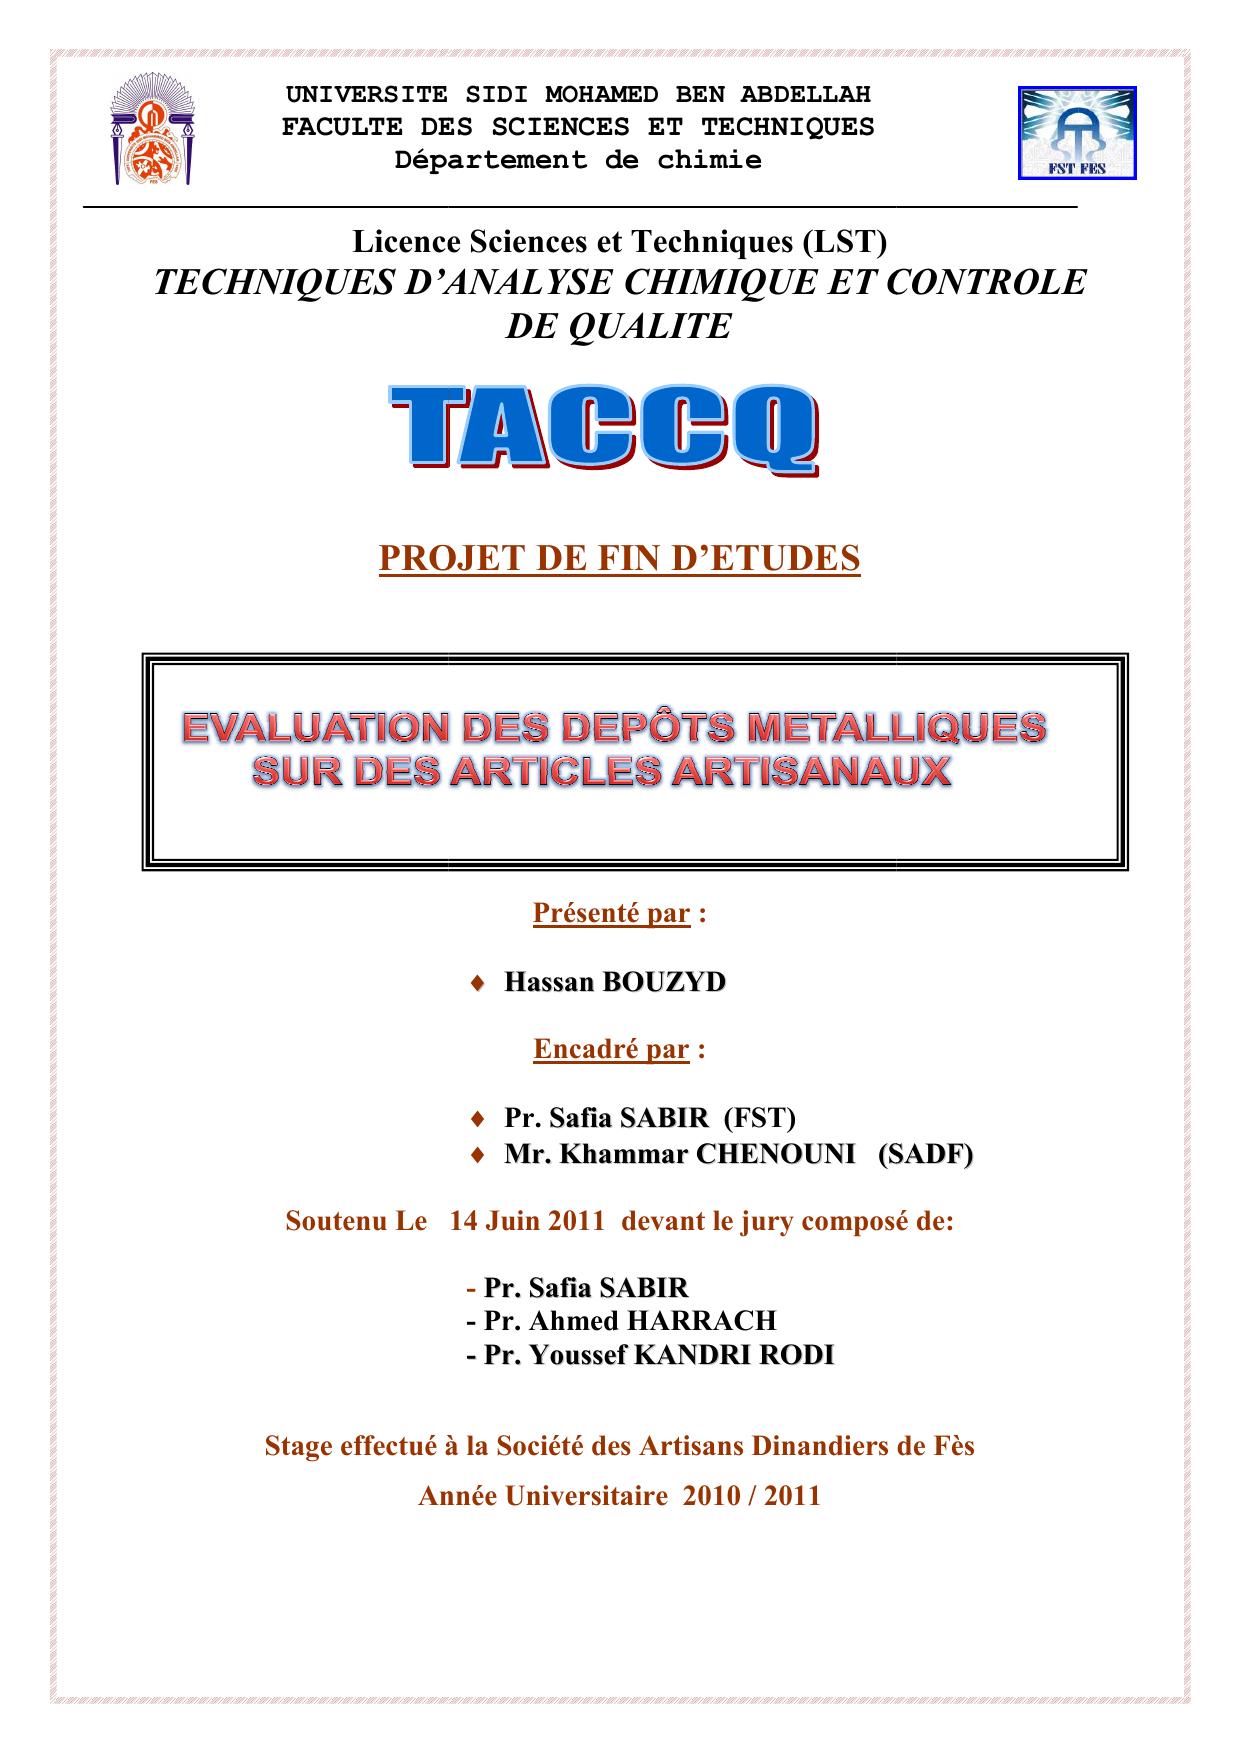 Evaluation des dépôts métalliques sur des articles artisanaux